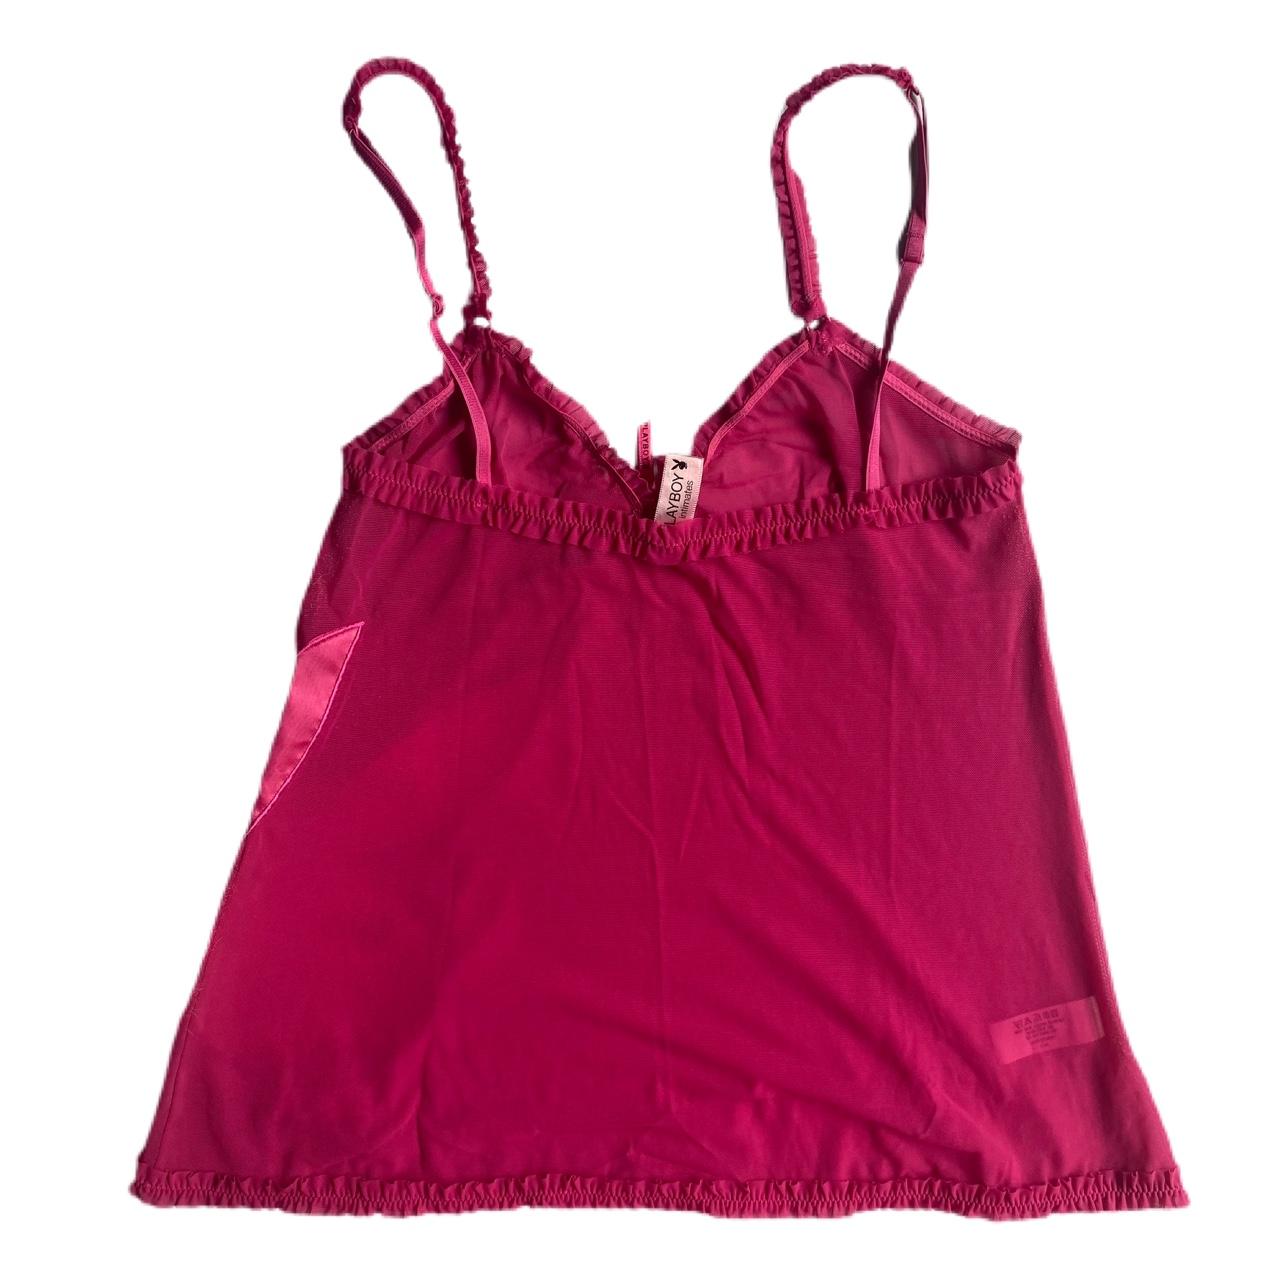 PLAYBOY (genuine y2k brand) ️ 🐰 vintage pink mesh... - Depop